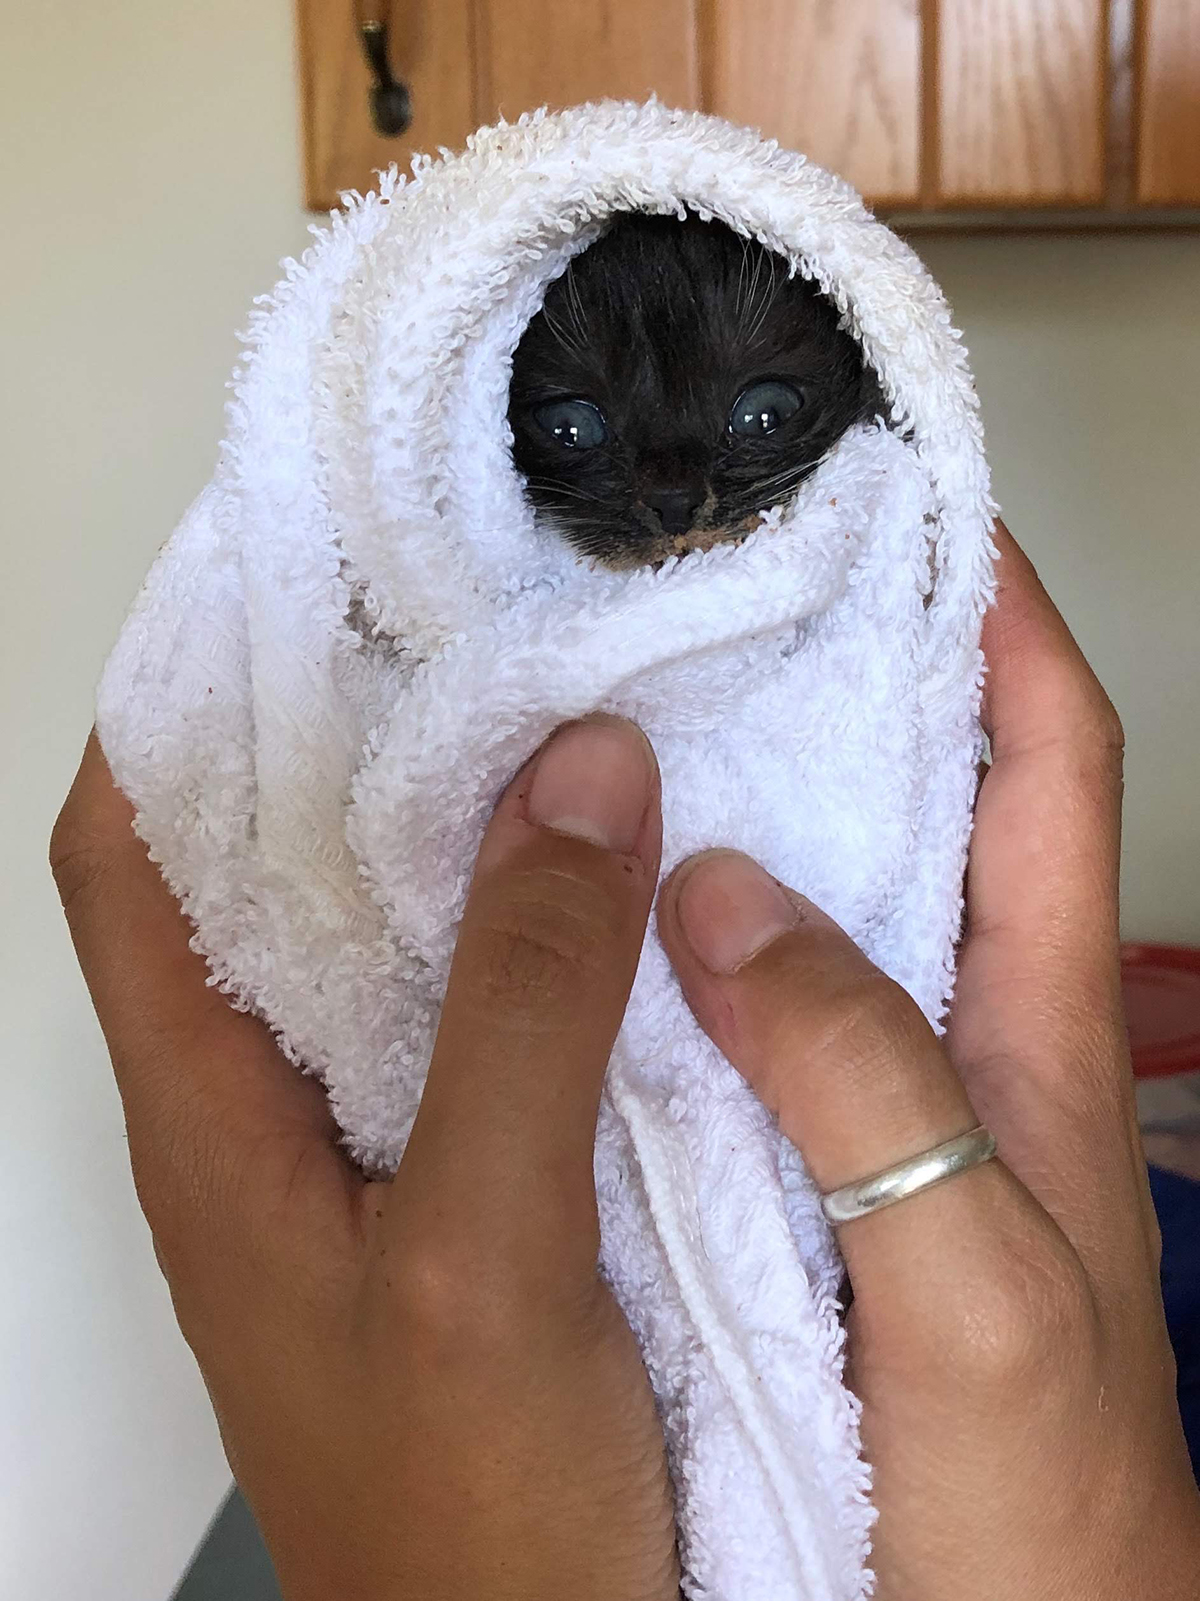 foster kitten in a towel